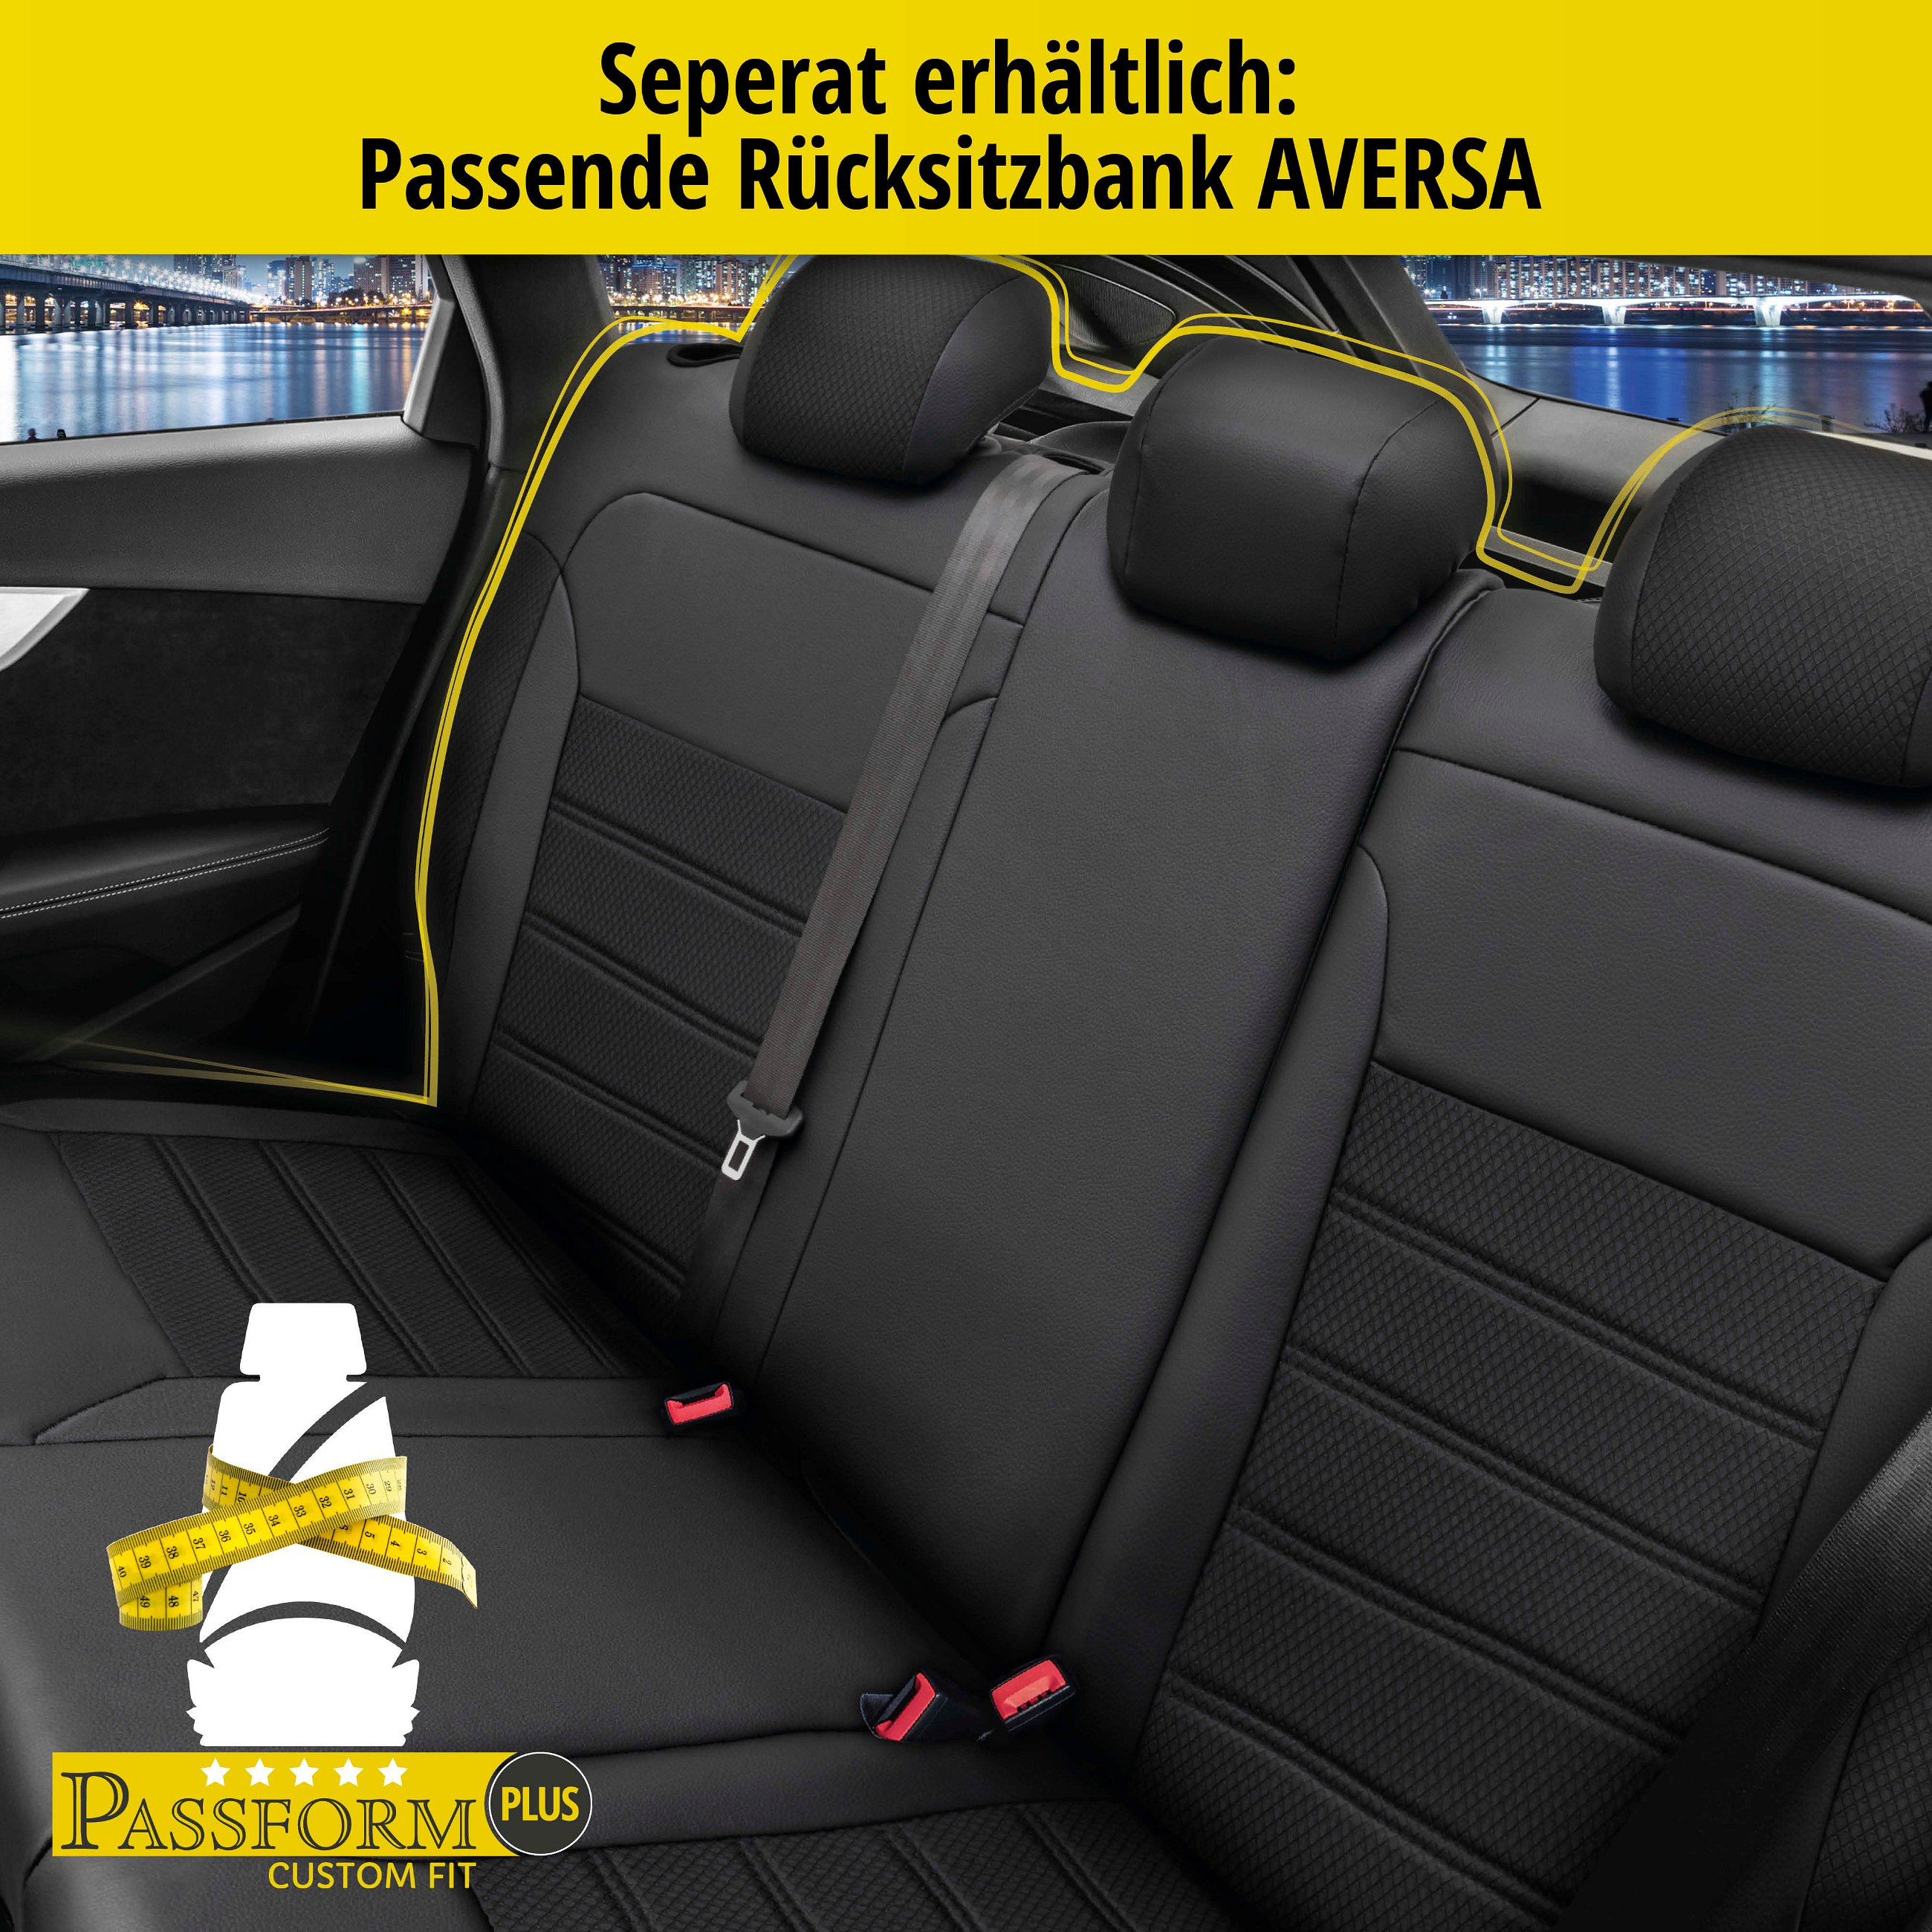 Passform Sitzbezug Aversa für Audi Q5 11/2008 - 12/2017, 2 Einzelsitzbezüge für Normalsitze